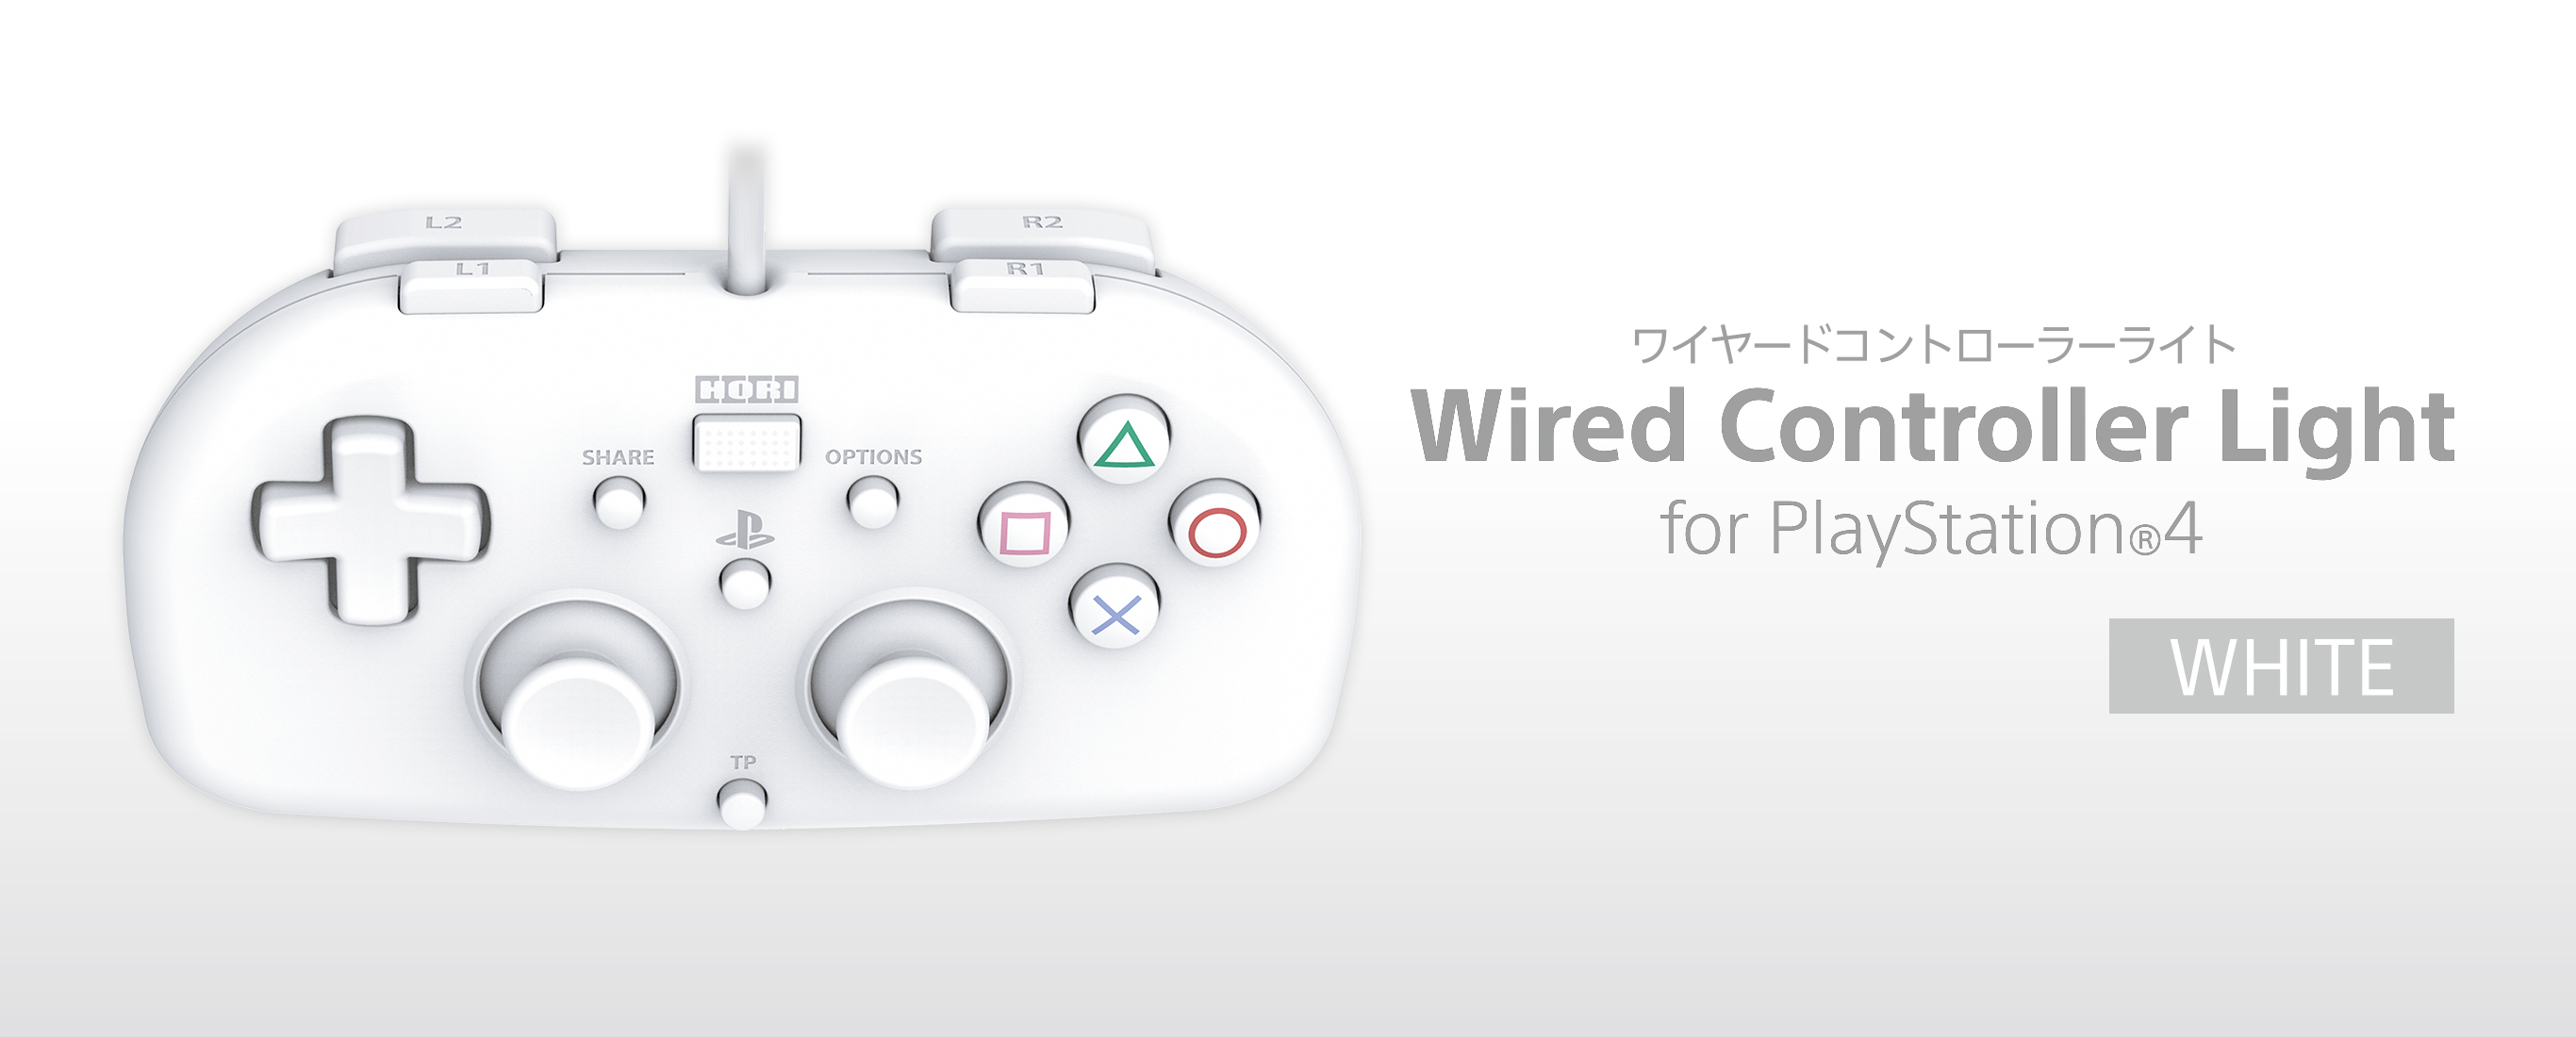 株式会社 HORI | ワイヤードコントローラーライト for PlayStation®4 ホワイト